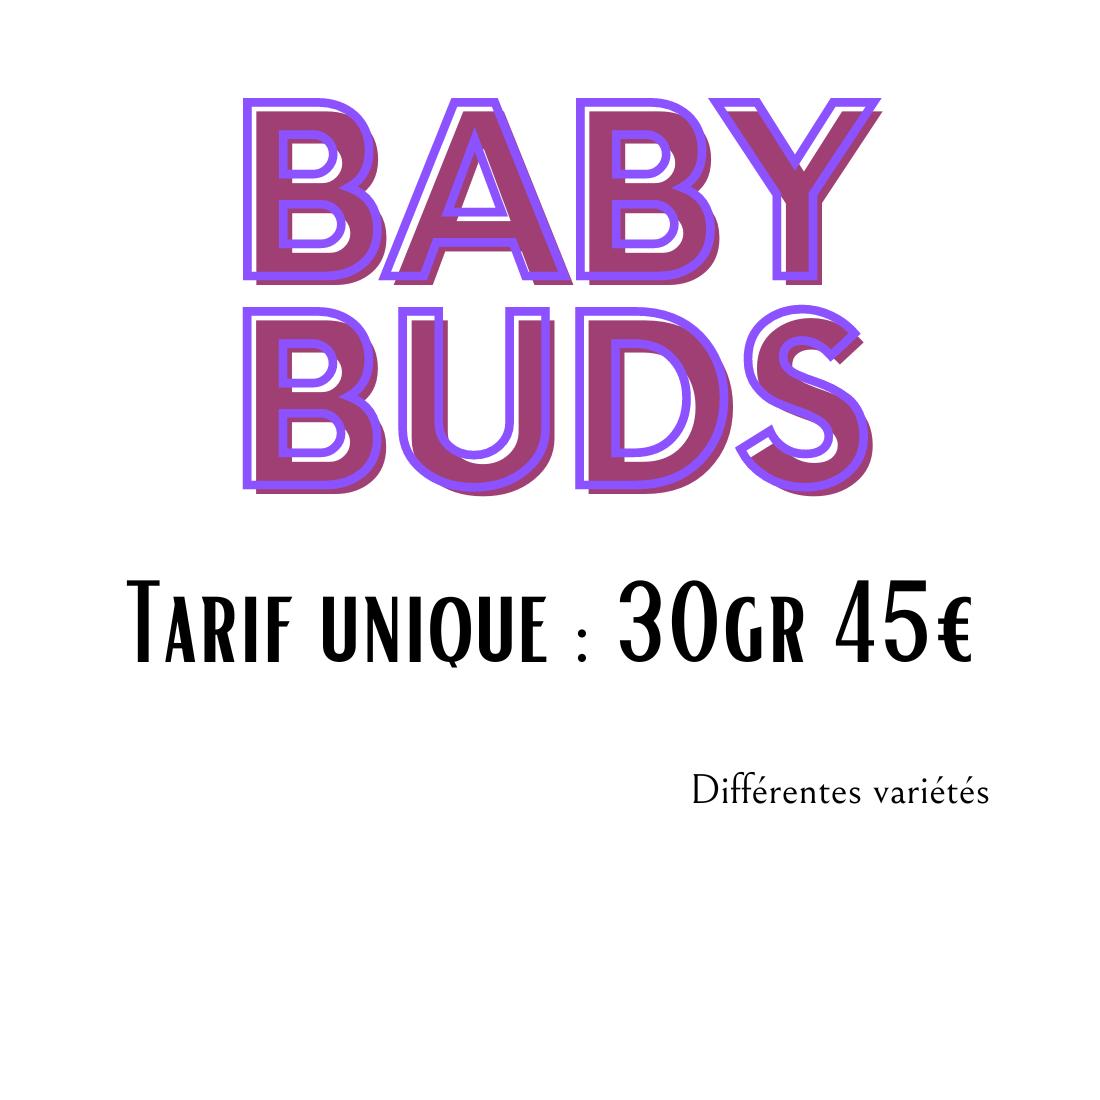 BABY BUDS au choix dès 1.50€/gr | 30gr